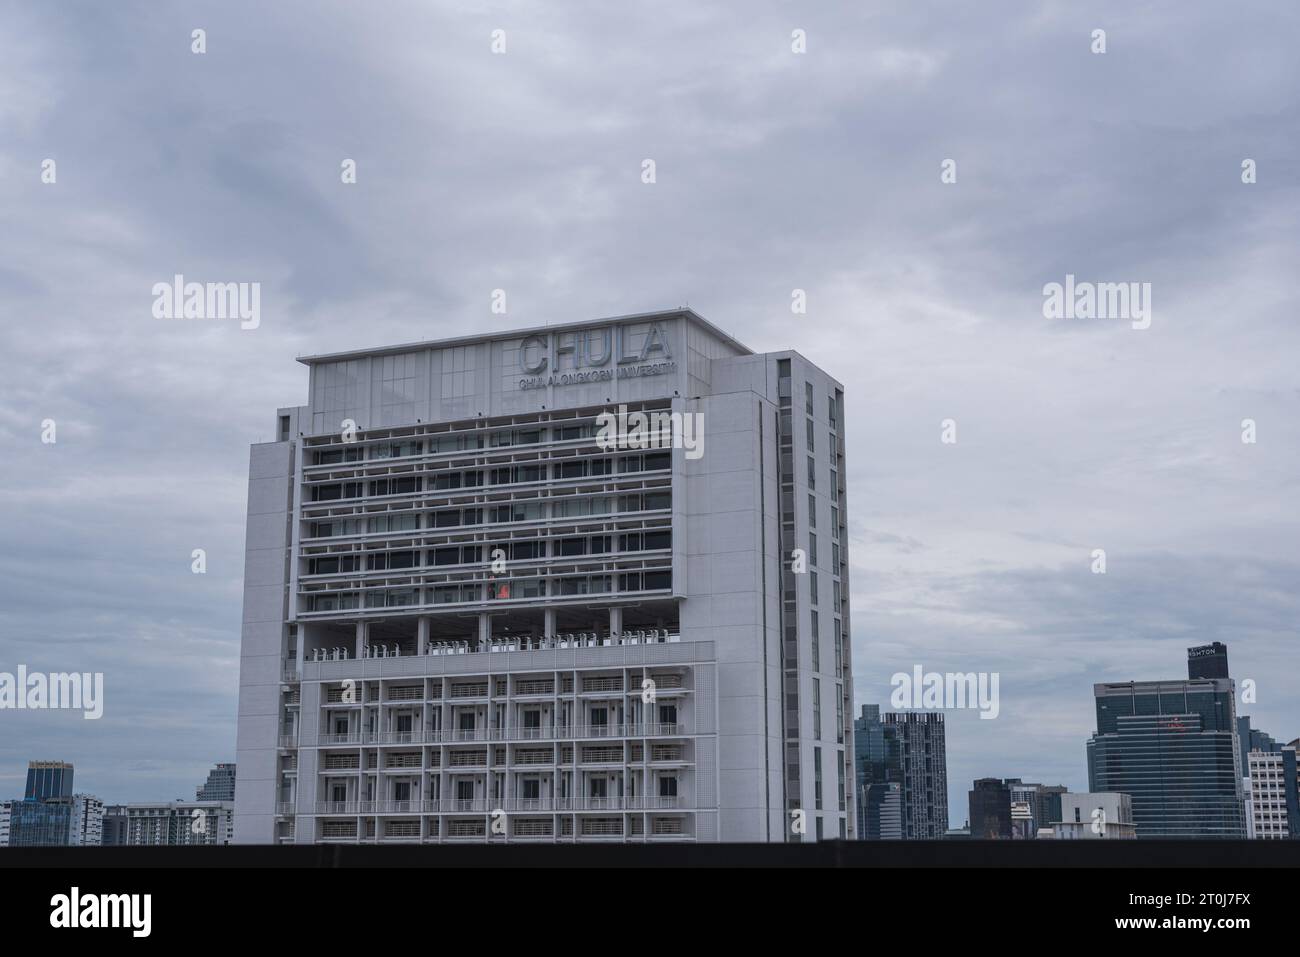 Bangkok, Thailandia - 16 settembre 2023: Uno degli edifici dell'Università Chulalongkorn con l'insegna "Chula, Università Chulalongkorn". Foto Stock